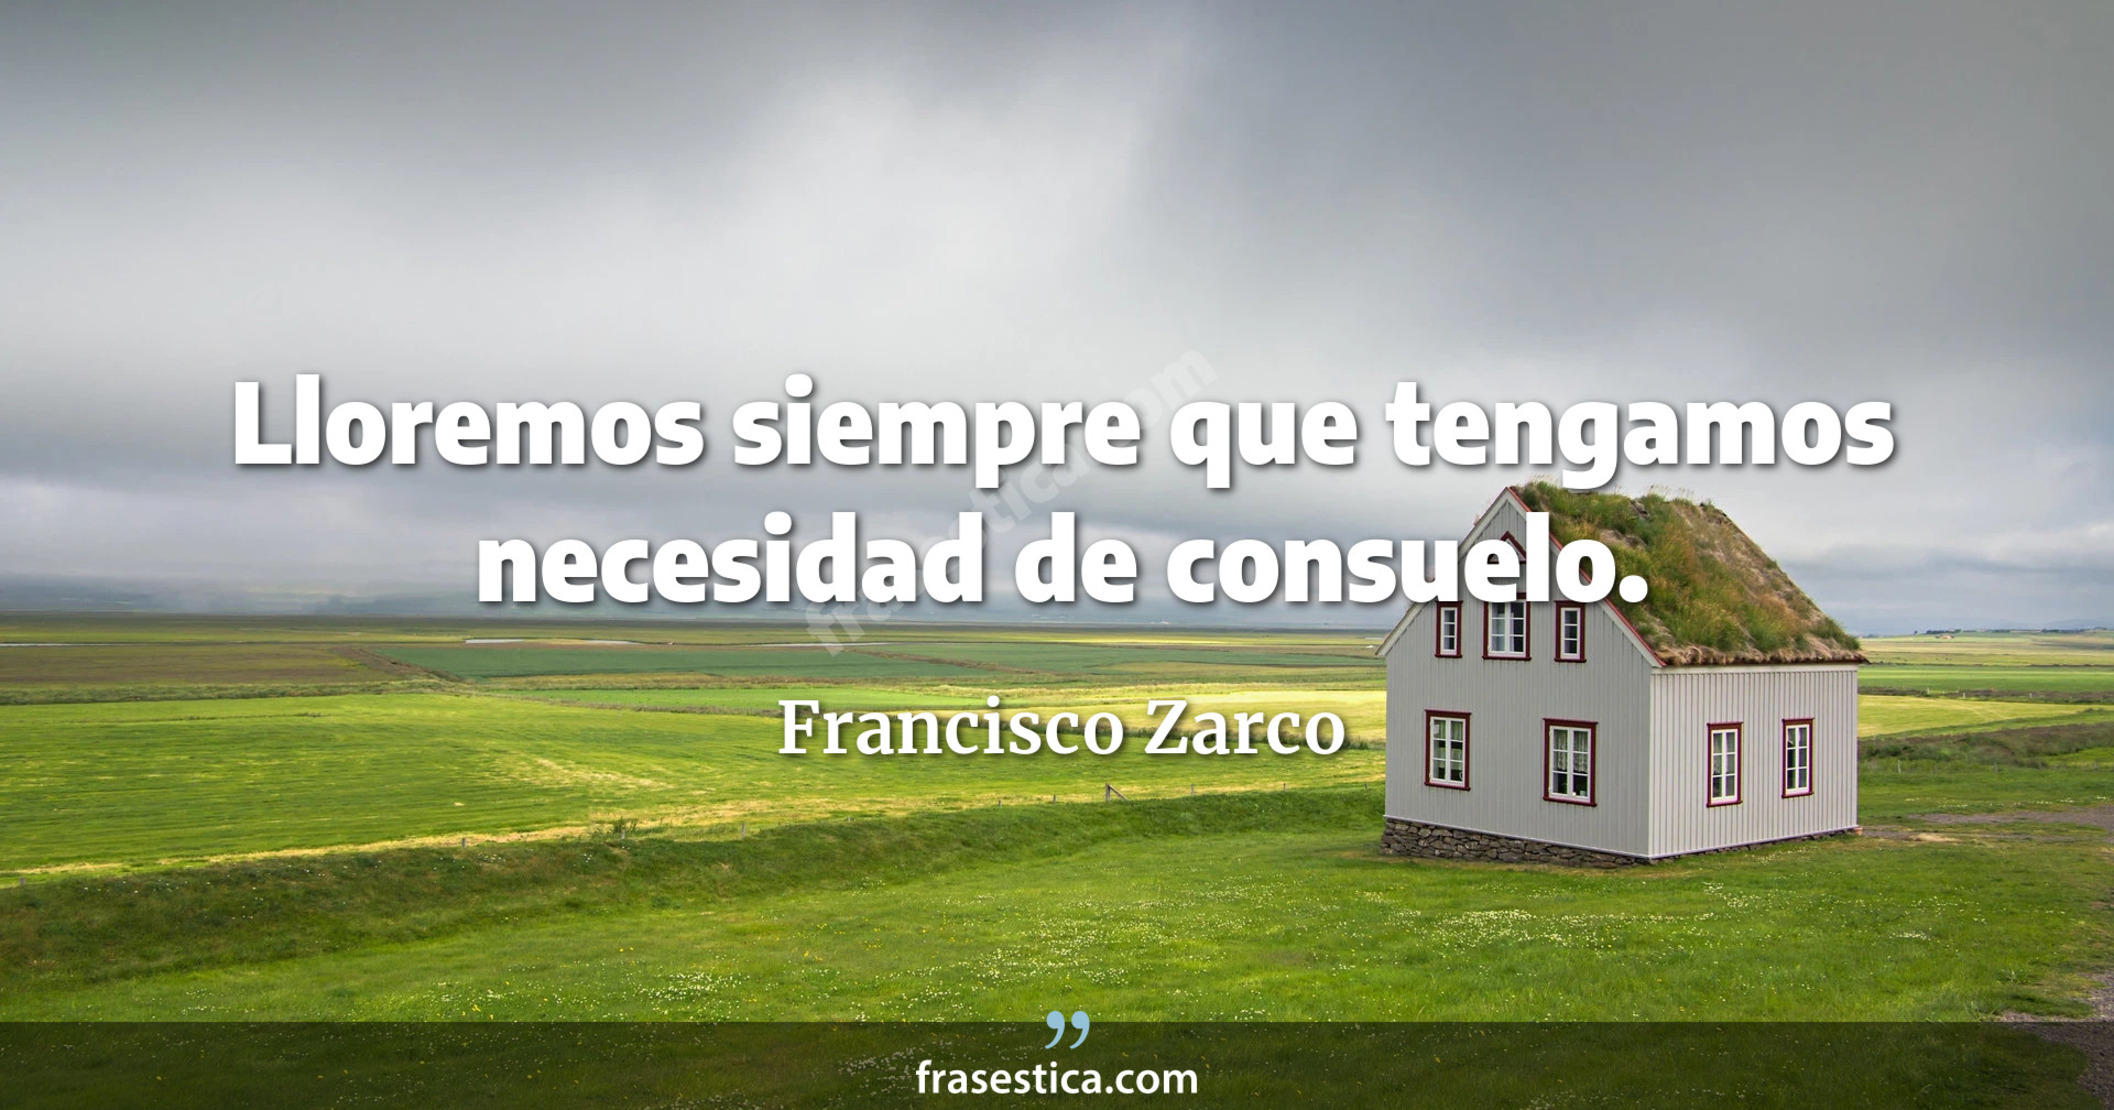 Lloremos siempre que tengamos necesidad de consuelo. - Francisco Zarco